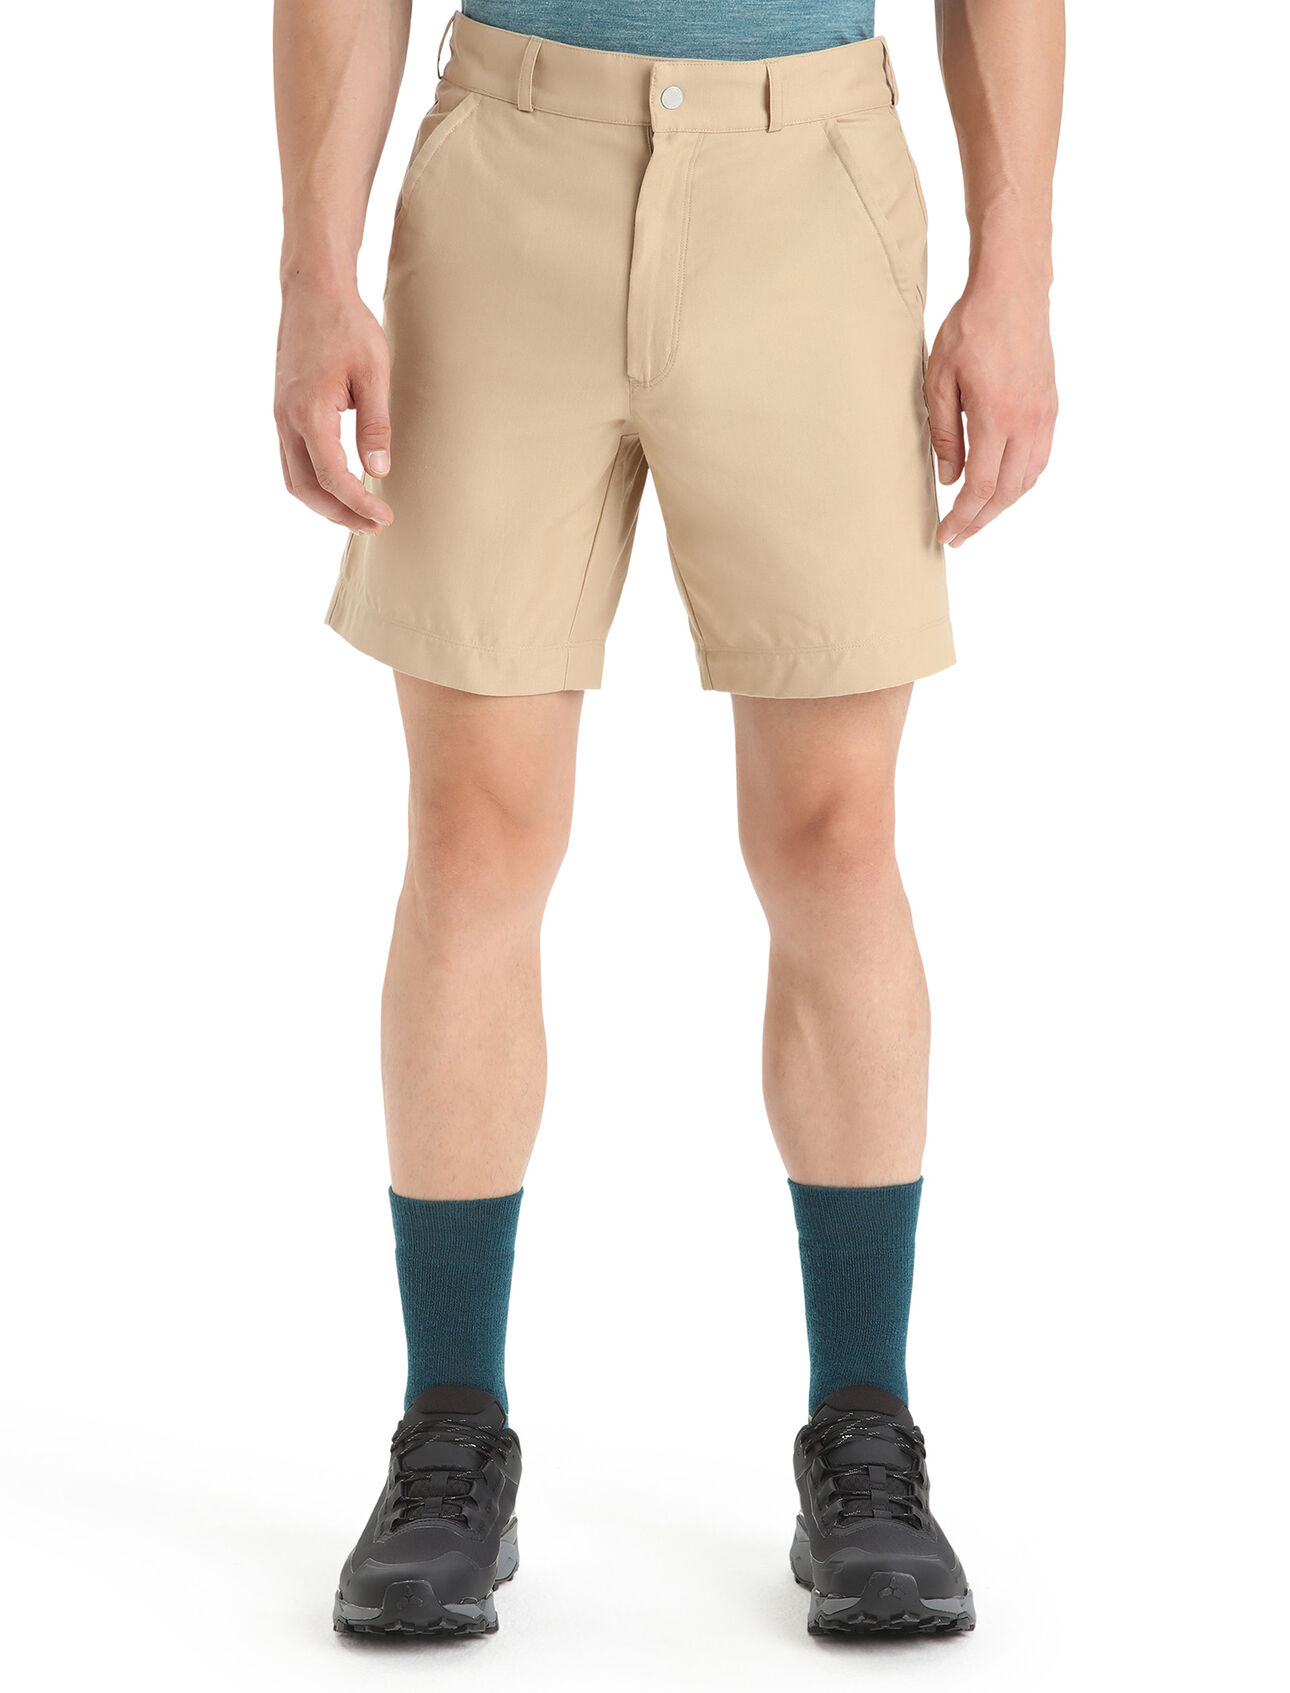 para hombre Shorts Merino Hike Un pantalón corto duradero y versátil elaborado con una mezcla única de lana merina y algodón orgánico, los Hike son ideales para aventuras de montaña de todo tipo.